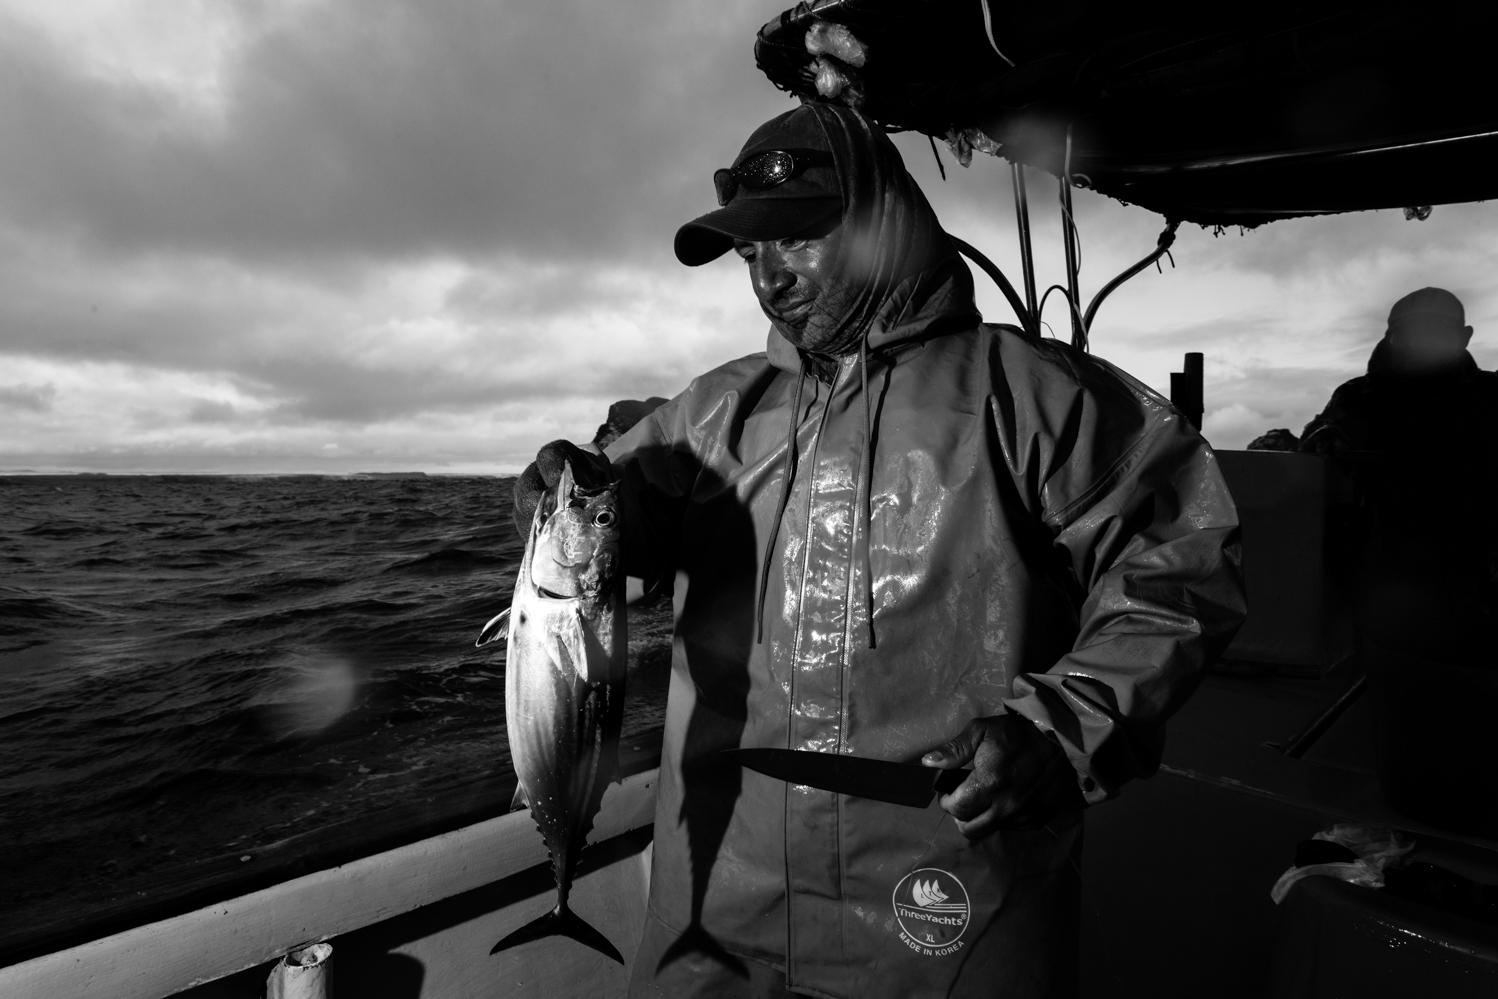 Walter Borbon pescador artesanal, desde hace 15 años pesca dentro de la reserva marina galapagos...